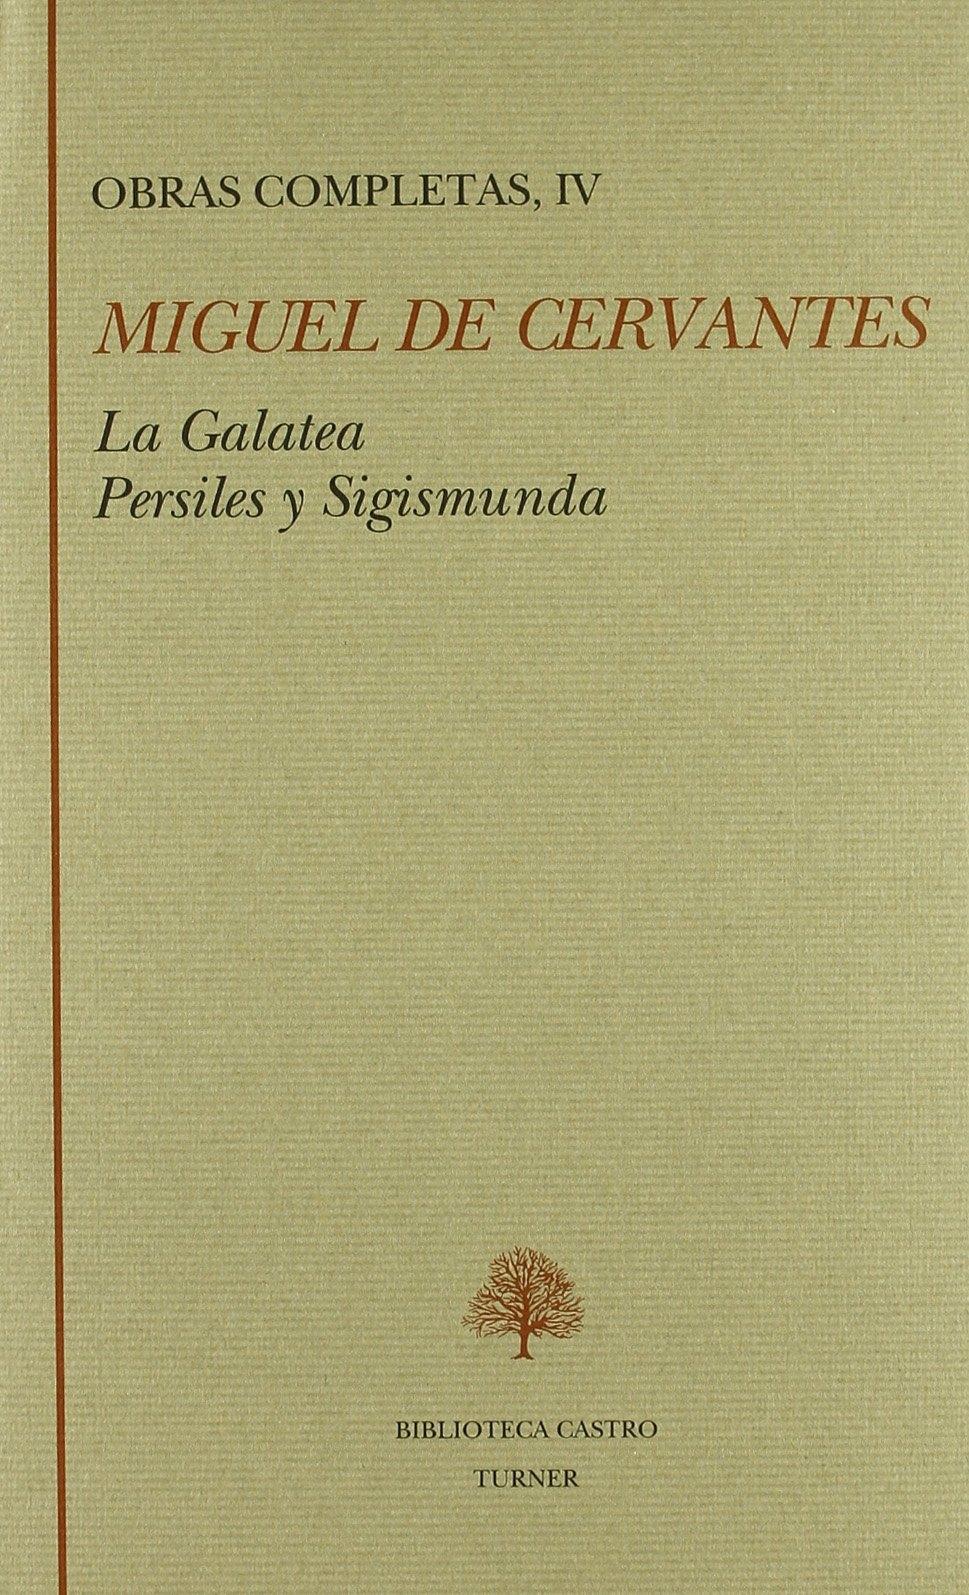 Obras Completas Iv "Galatea, La.Persiles y Segismunda"